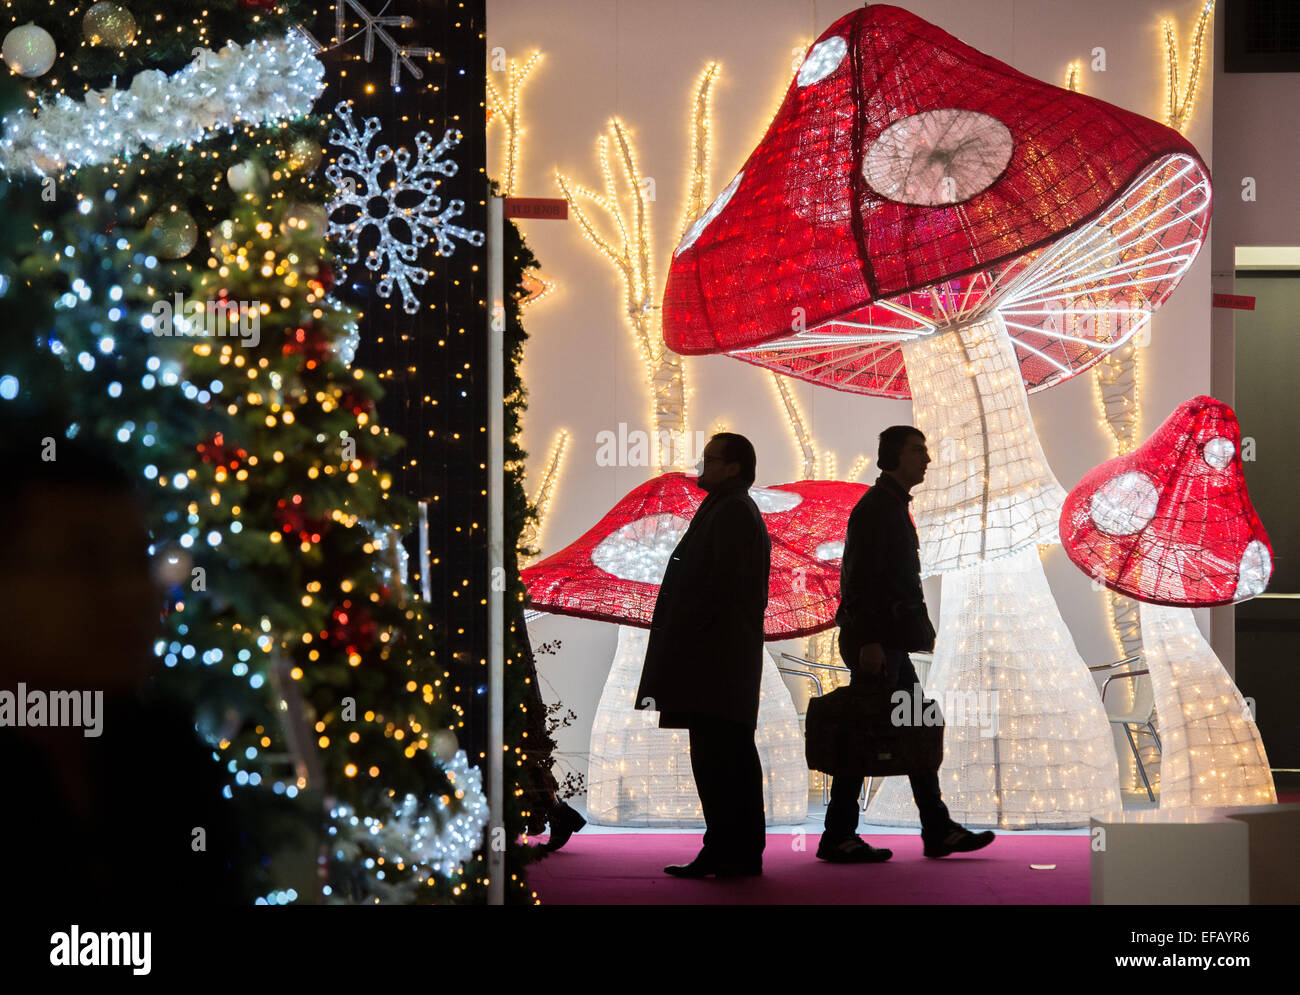 Toadstools éclairé à la foire de biens de consommation salon Christmasworld Frankfurt am Main, Allemagne, 30 janvier 2015. Le commerce a déjà commencé pour les marchandises de Noël pour la fin de cette année. PHOTO : BORIS ROESSLER/dpa Banque D'Images